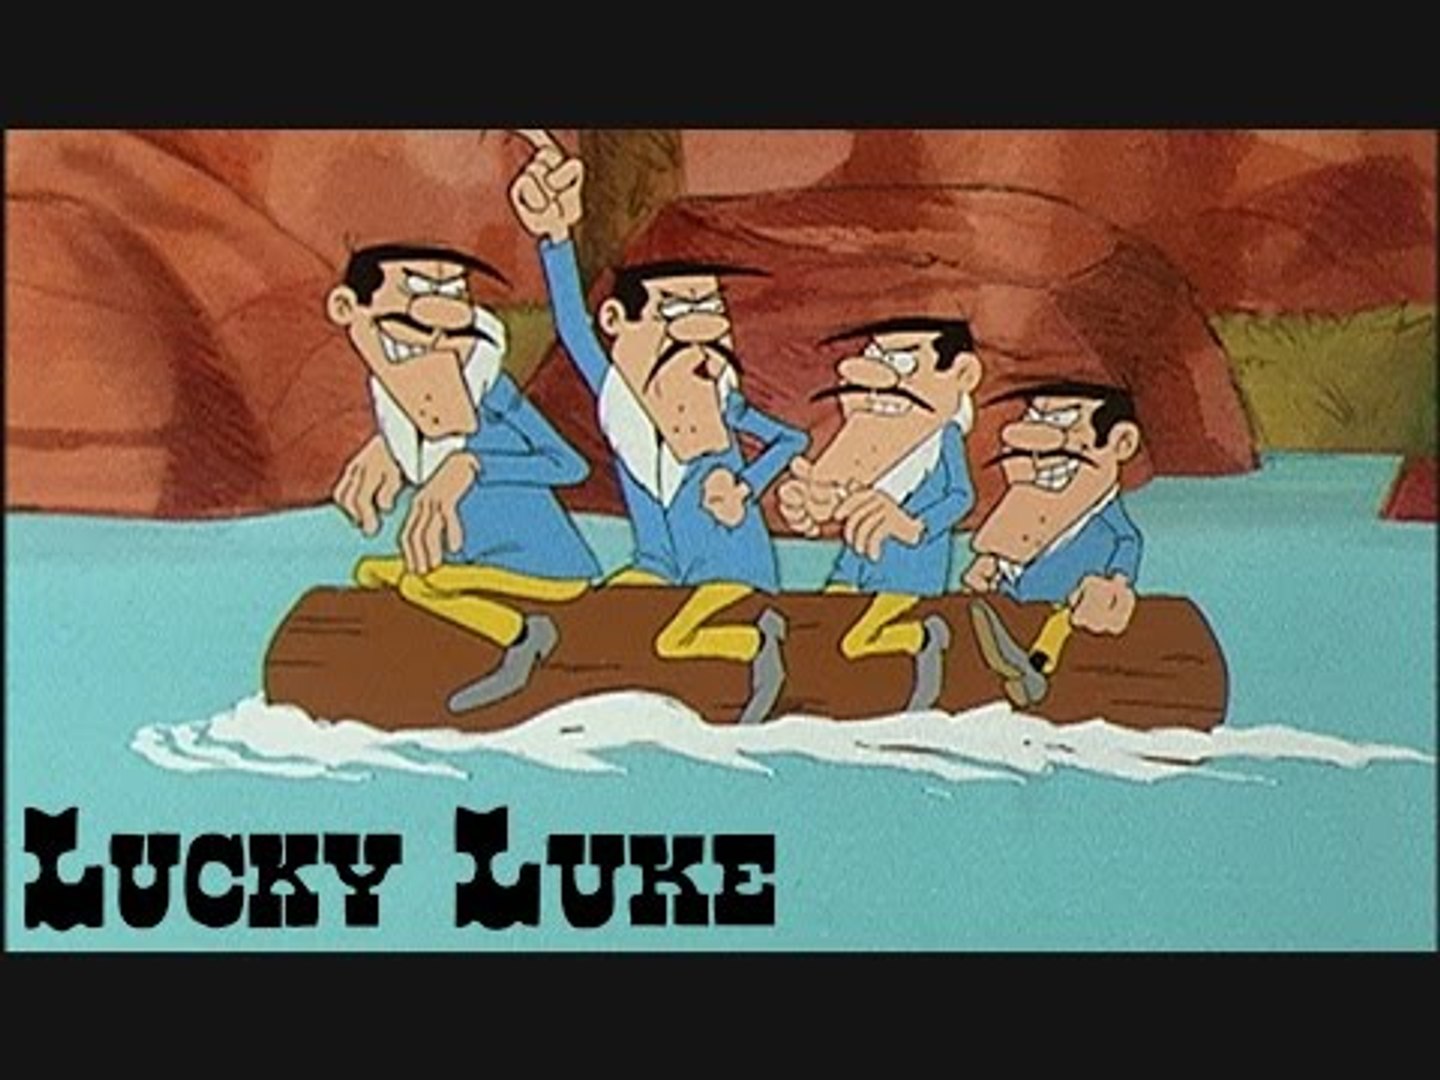 Série complète fèves épiphanie Lucky Luke dessin animé